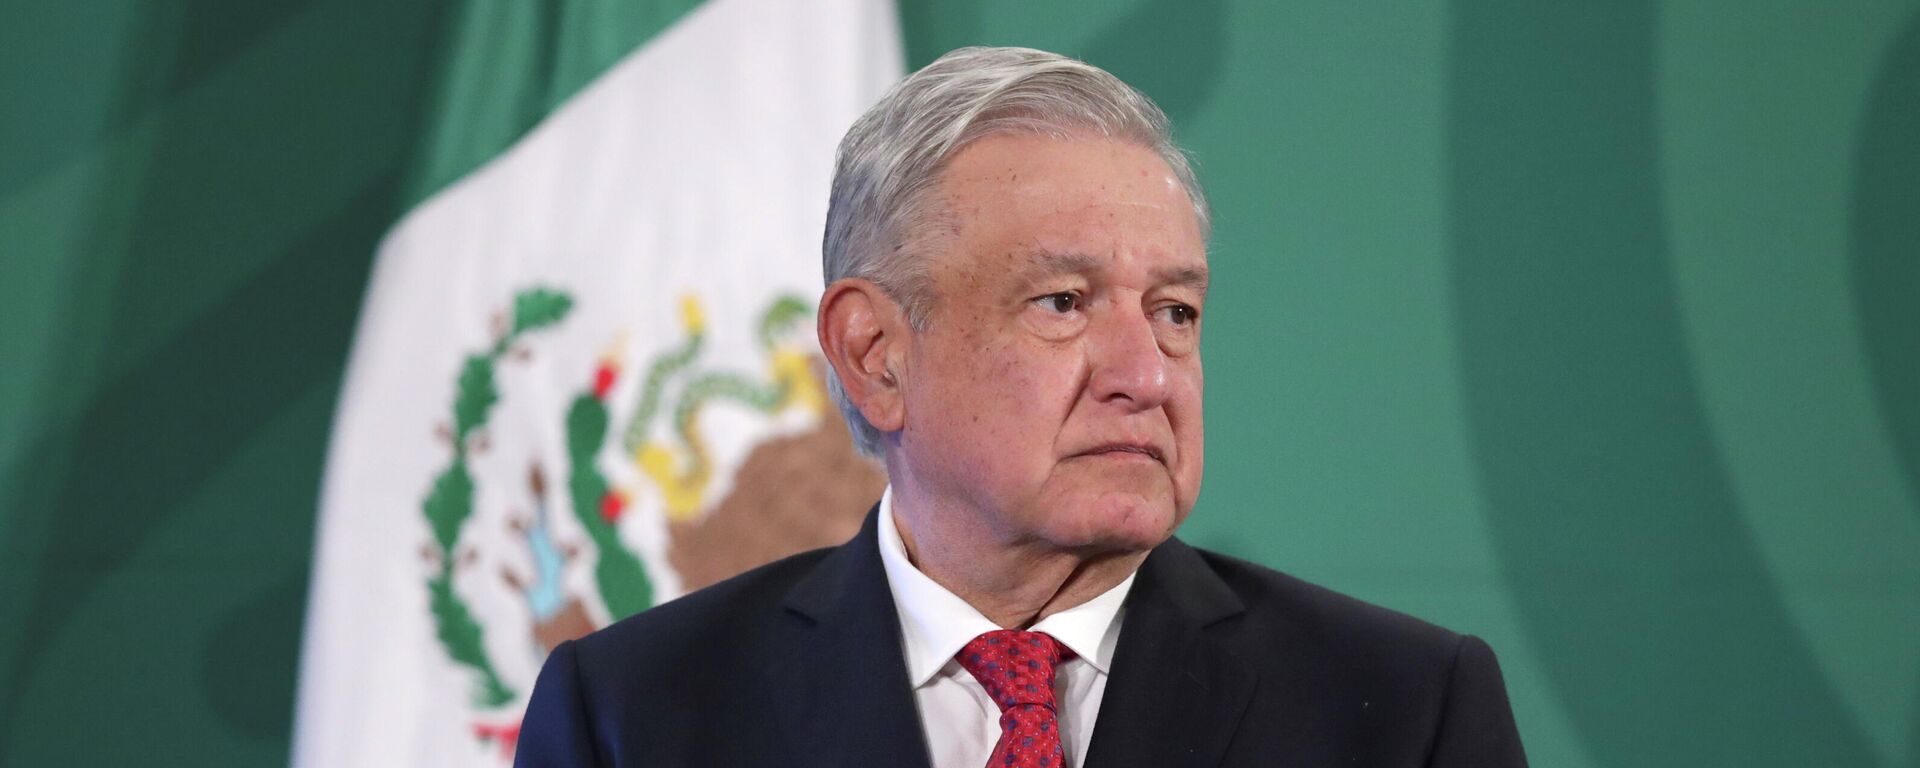 Andrés Manuel López Obrador, presidente de México - Sputnik Mundo, 1920, 15.03.2021